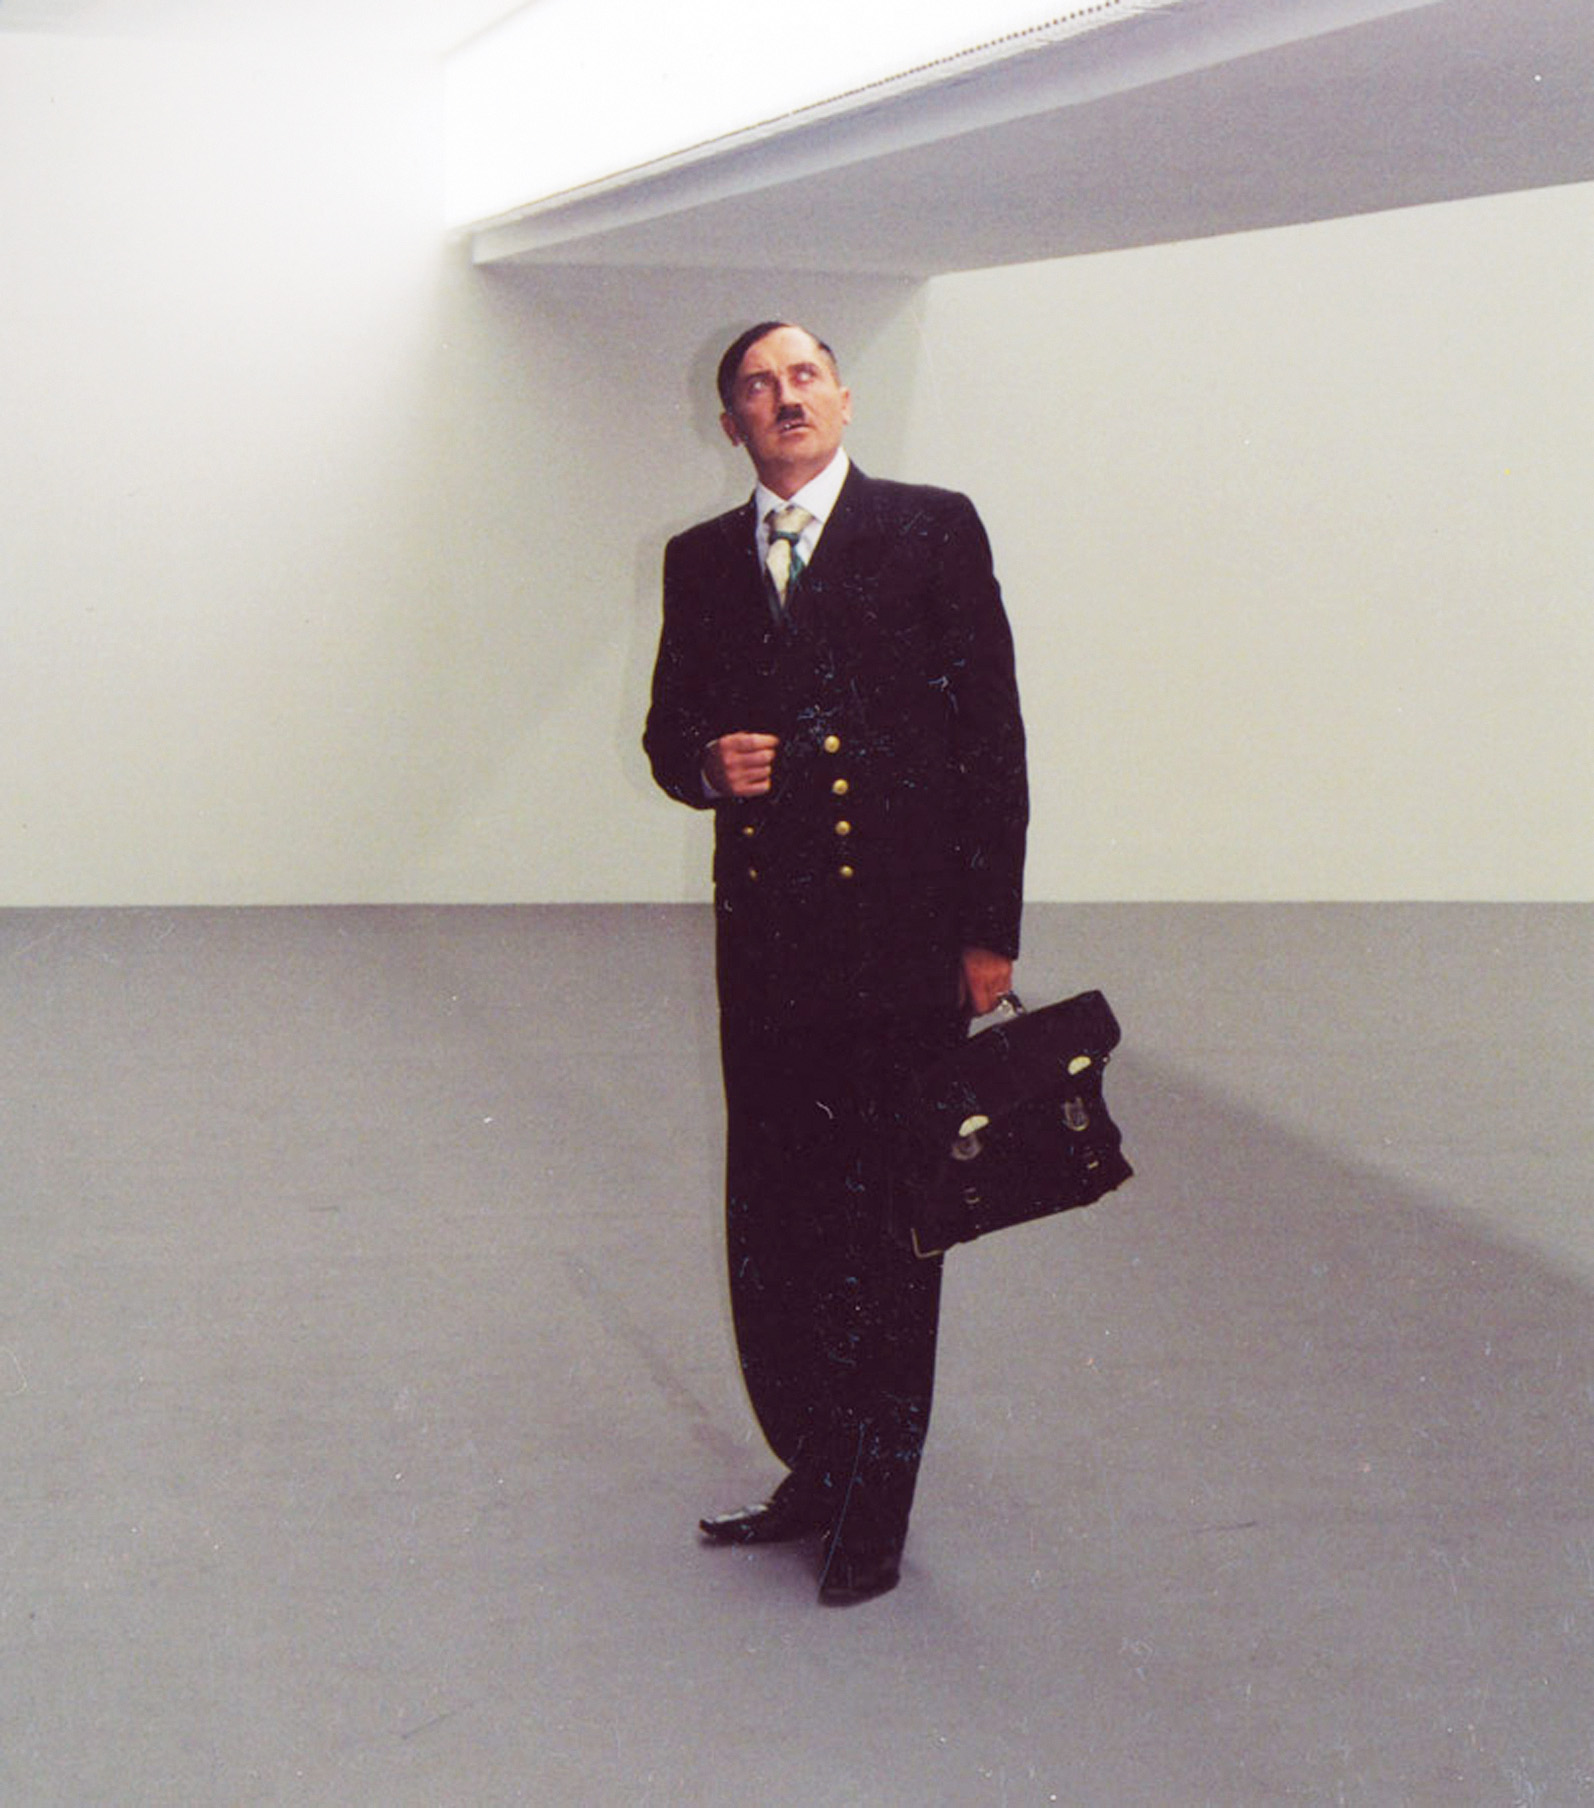 Владислав Мамышев-Монро в образе Адольфа Гитлера. Берлин, 2003
